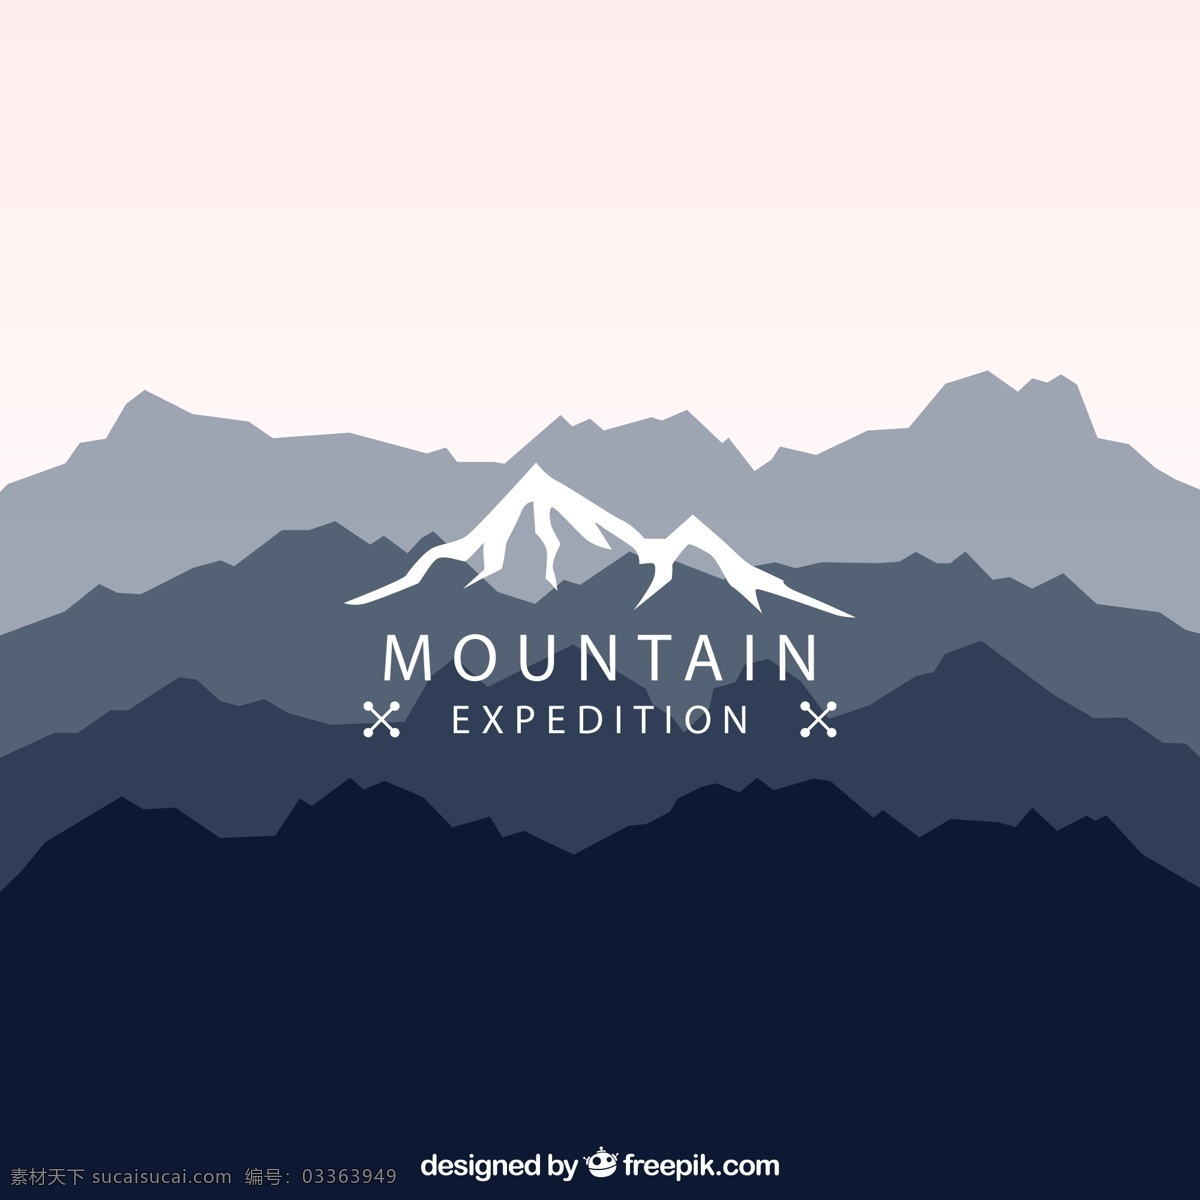 创意 山脉 剪影 风景 登山 探险 矢量 高清图片